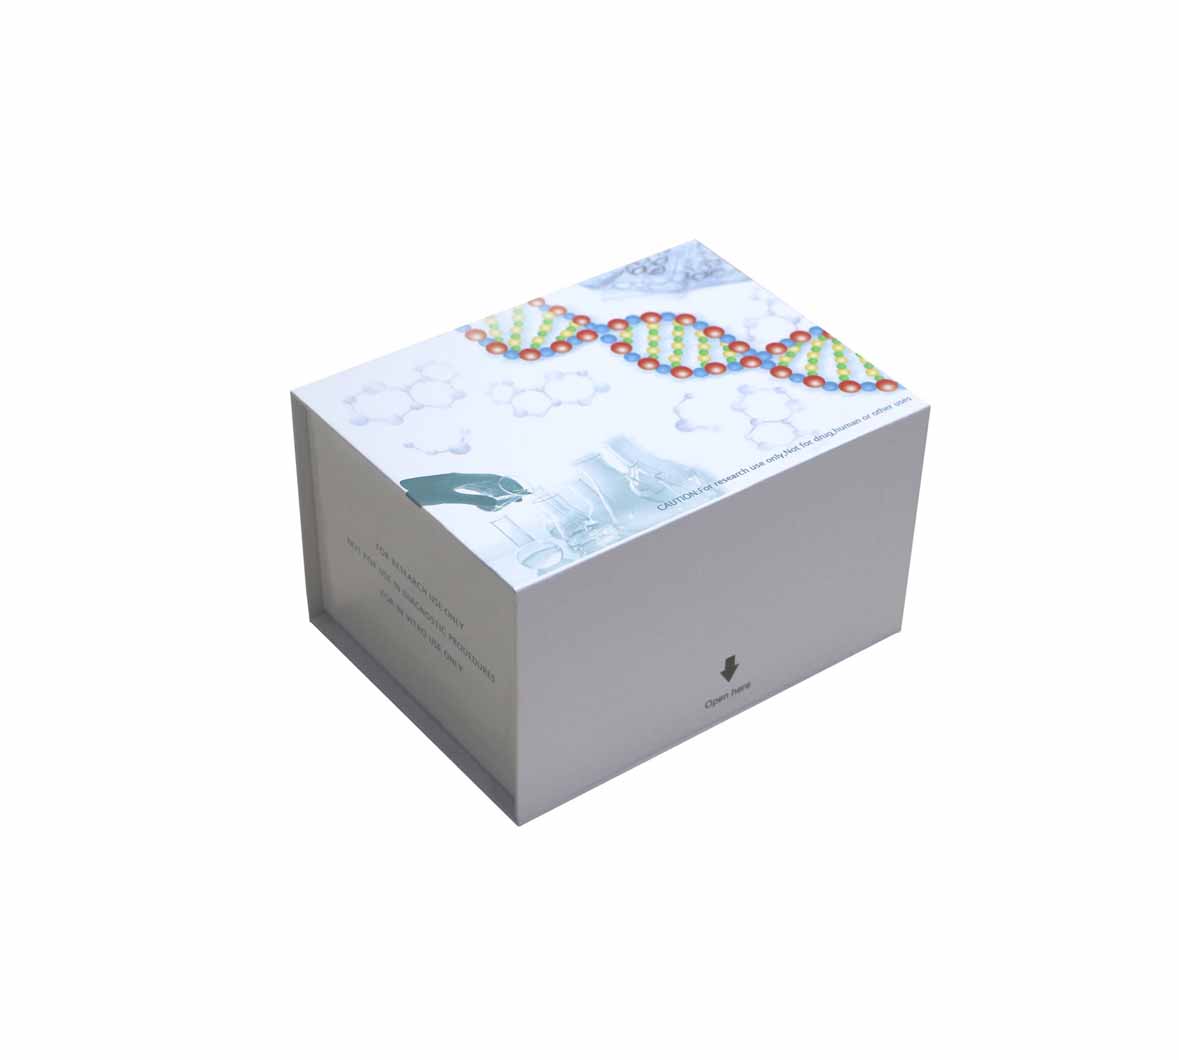 人肉毒碱脂酰转移酶(CACT)ELISA测定试剂盒